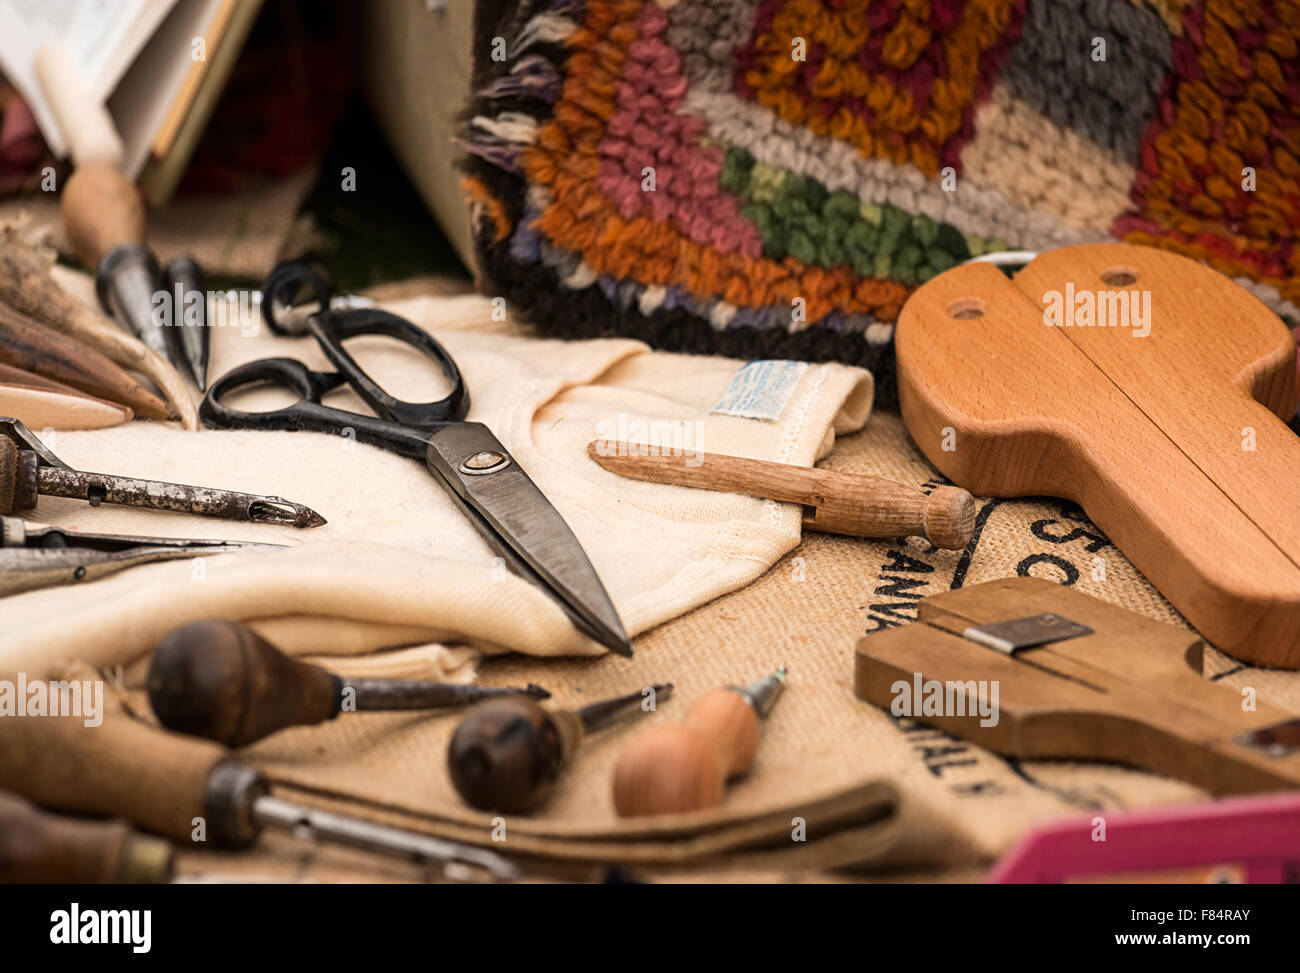 Selección de herramientas tradicionales utilizadas en la artesanía del tejido de alfombras a mano Foto de stock